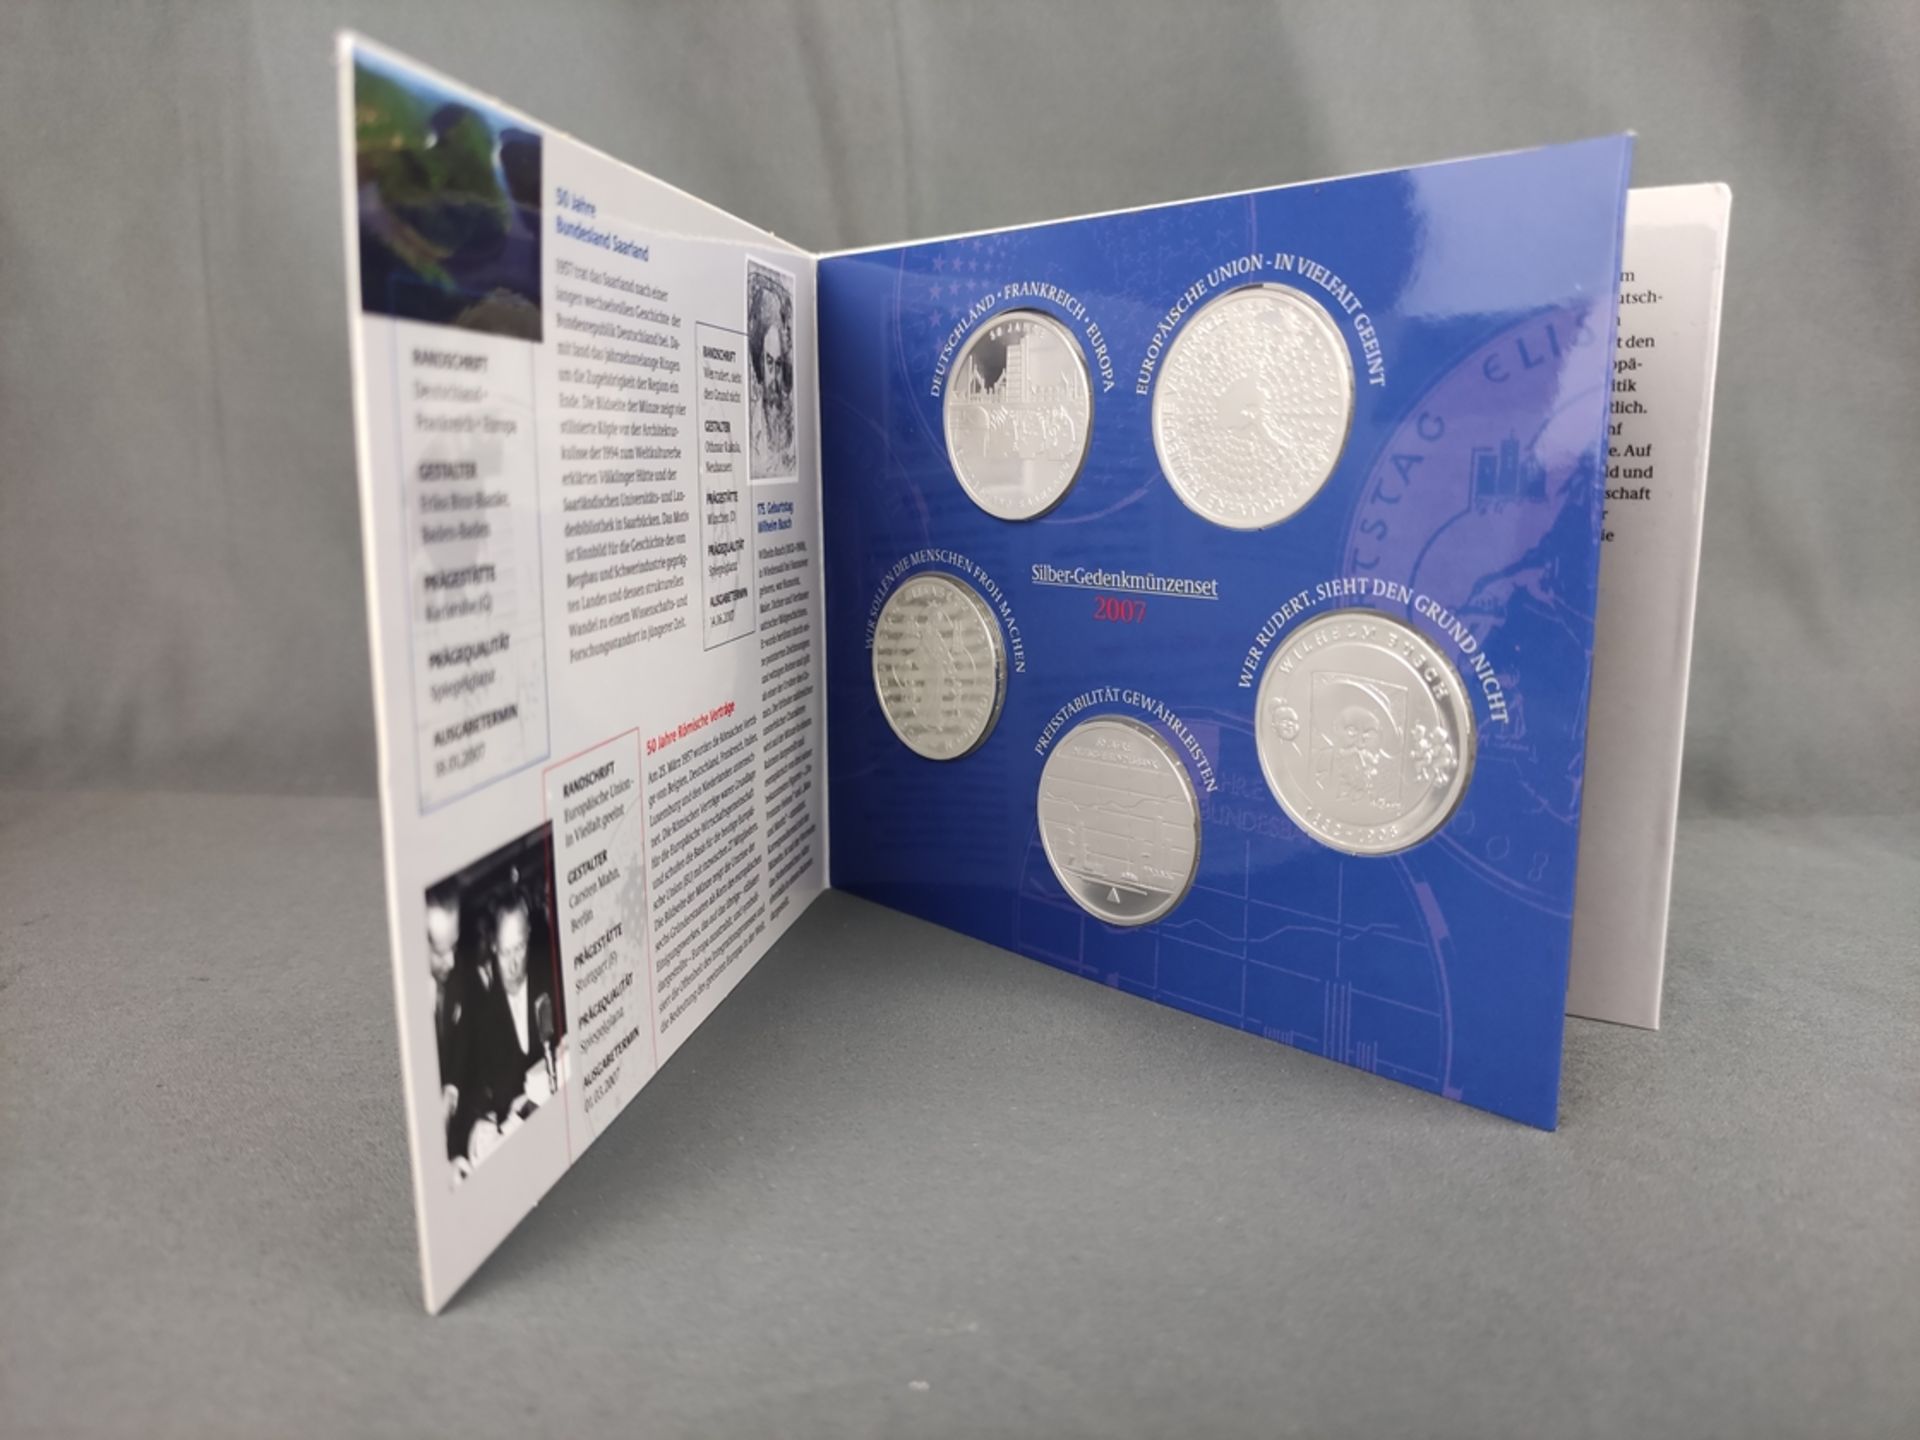 Silber-Gedenkmünzenset, BRD, 2007, mit 5x10 Euro Silbermünzen